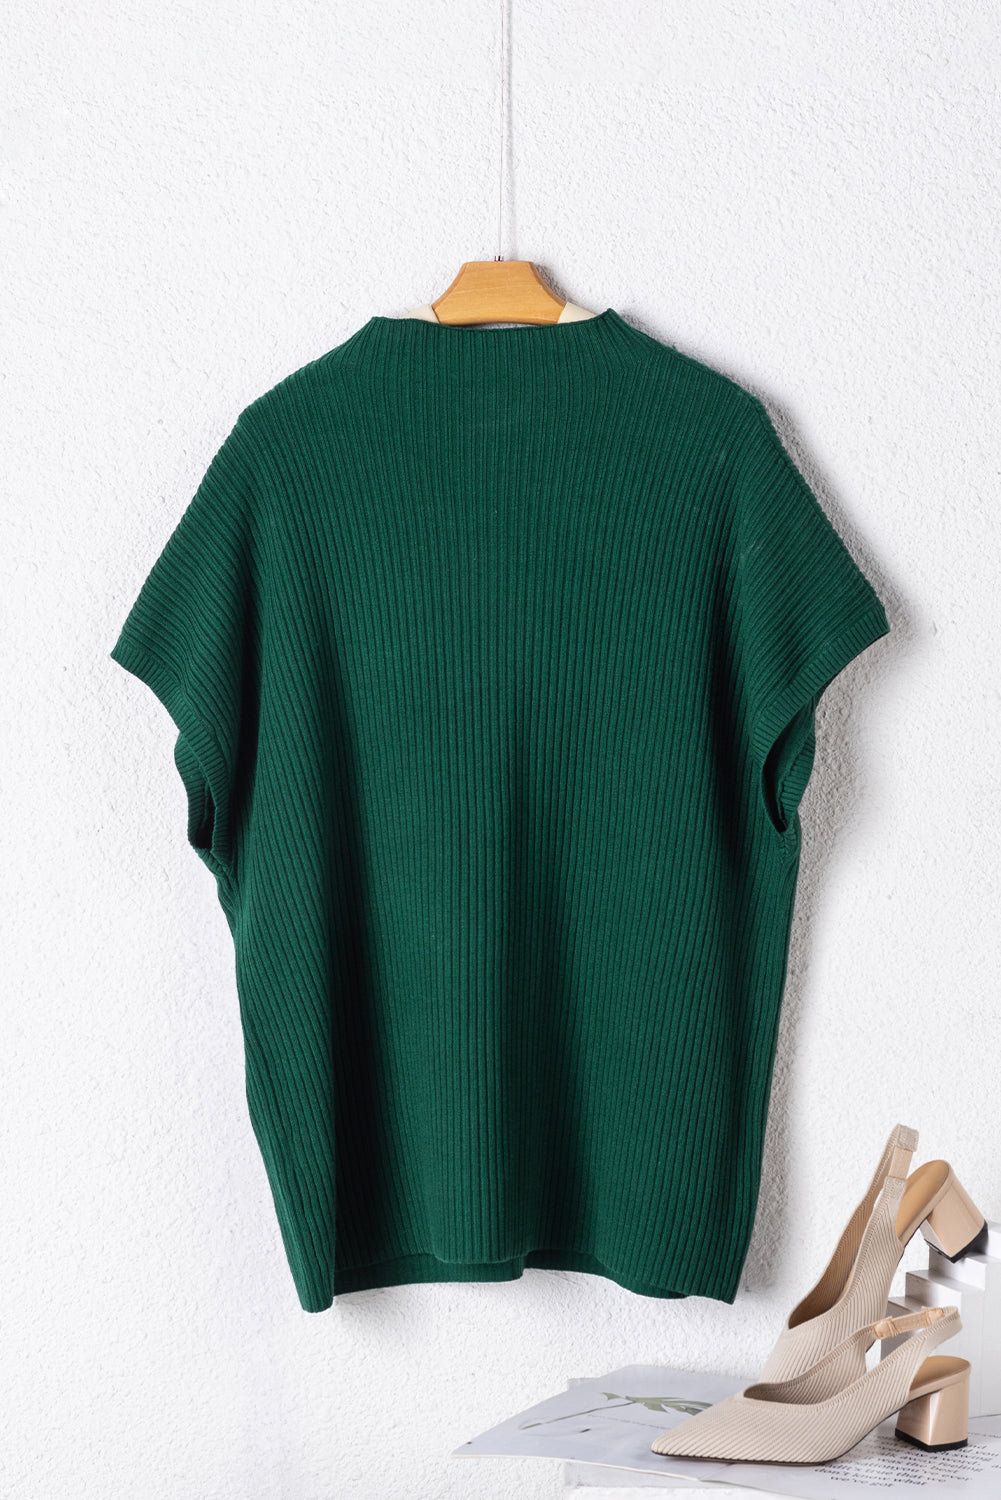 Jungle Green pulover s kratkimi rokavi in ​​navideznim ovratnikom velike velikosti